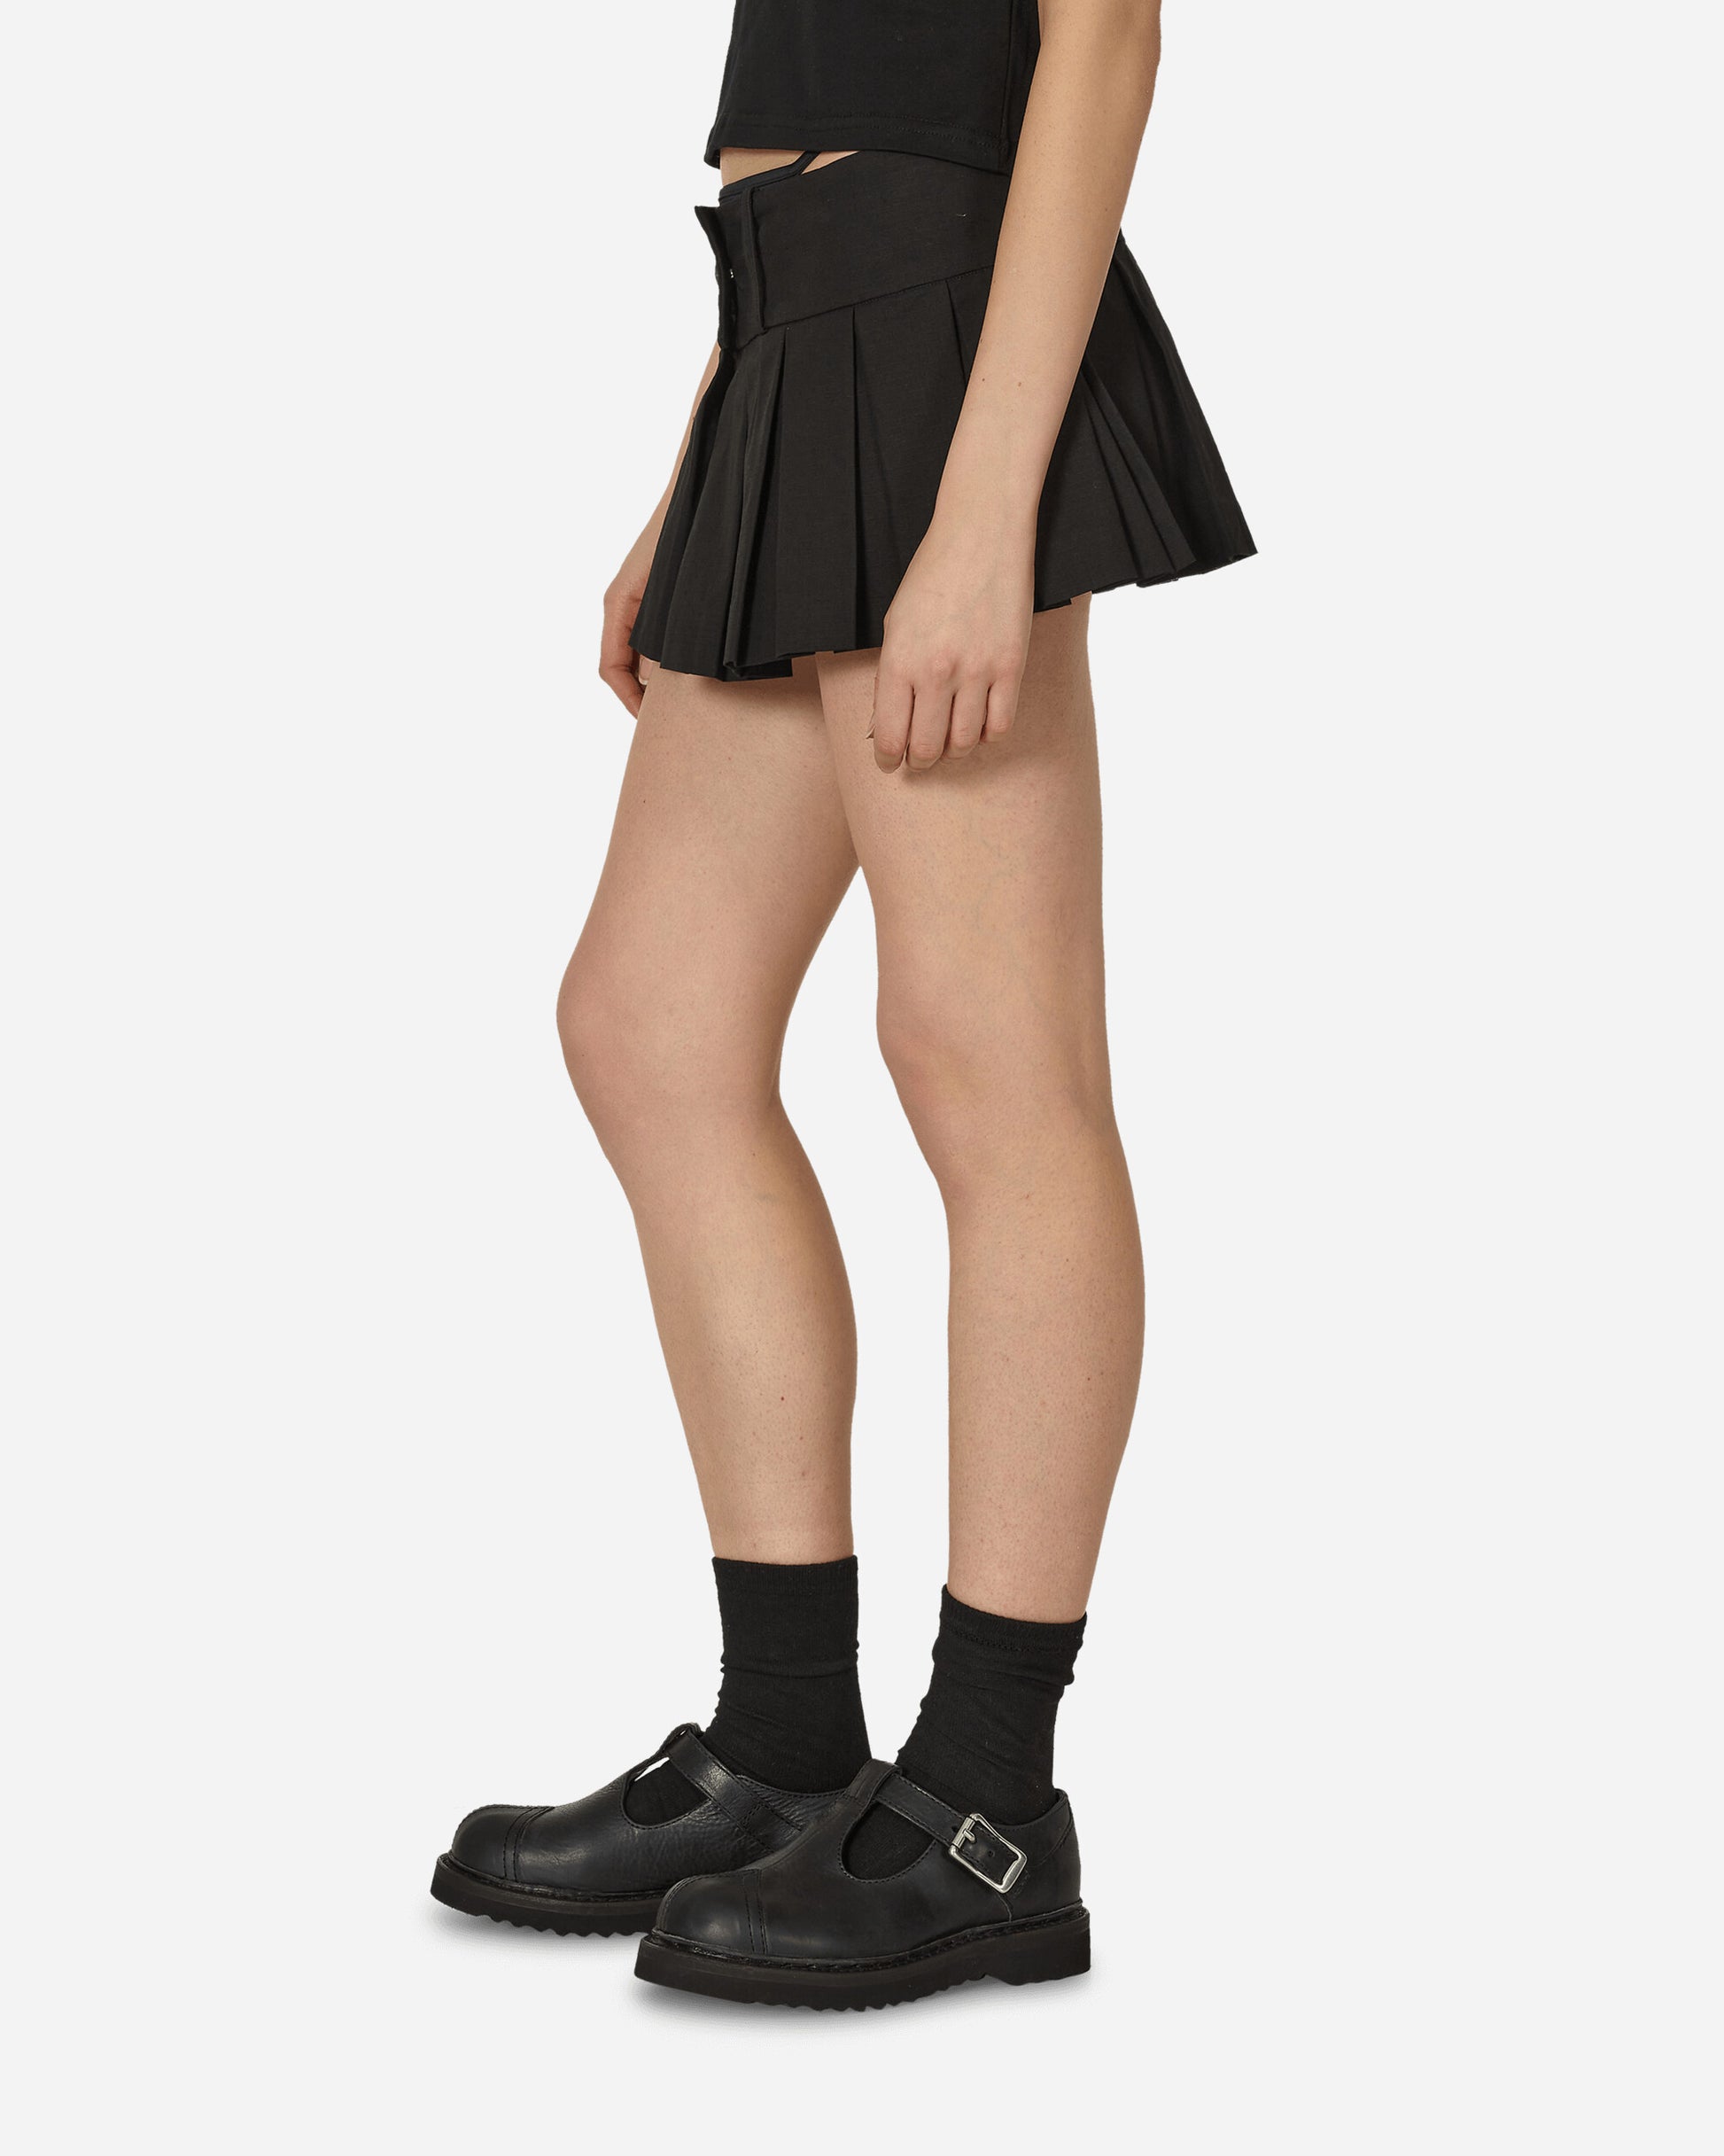 Nii Hai Wmns Overpacker Skirt In Black Black Skirts Mini SKRT-OVRPK BLK